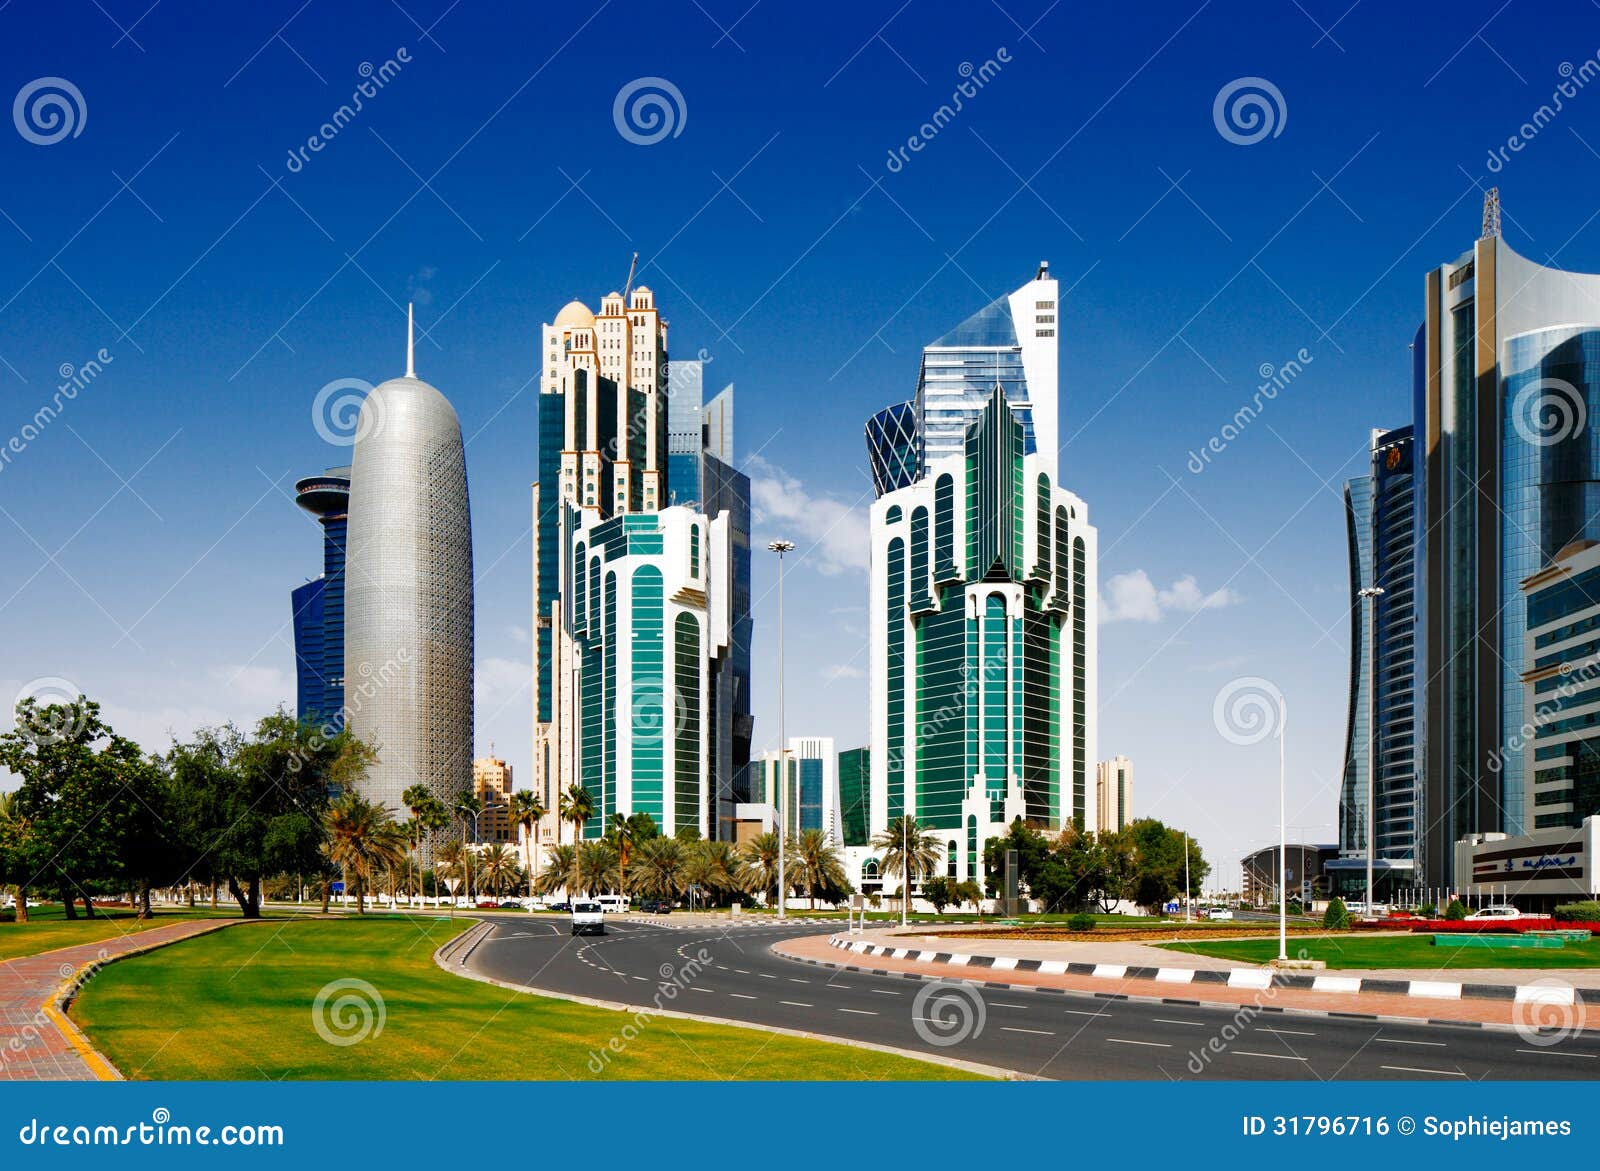 the doha corniche is a waterfront promenade in doha, qatar